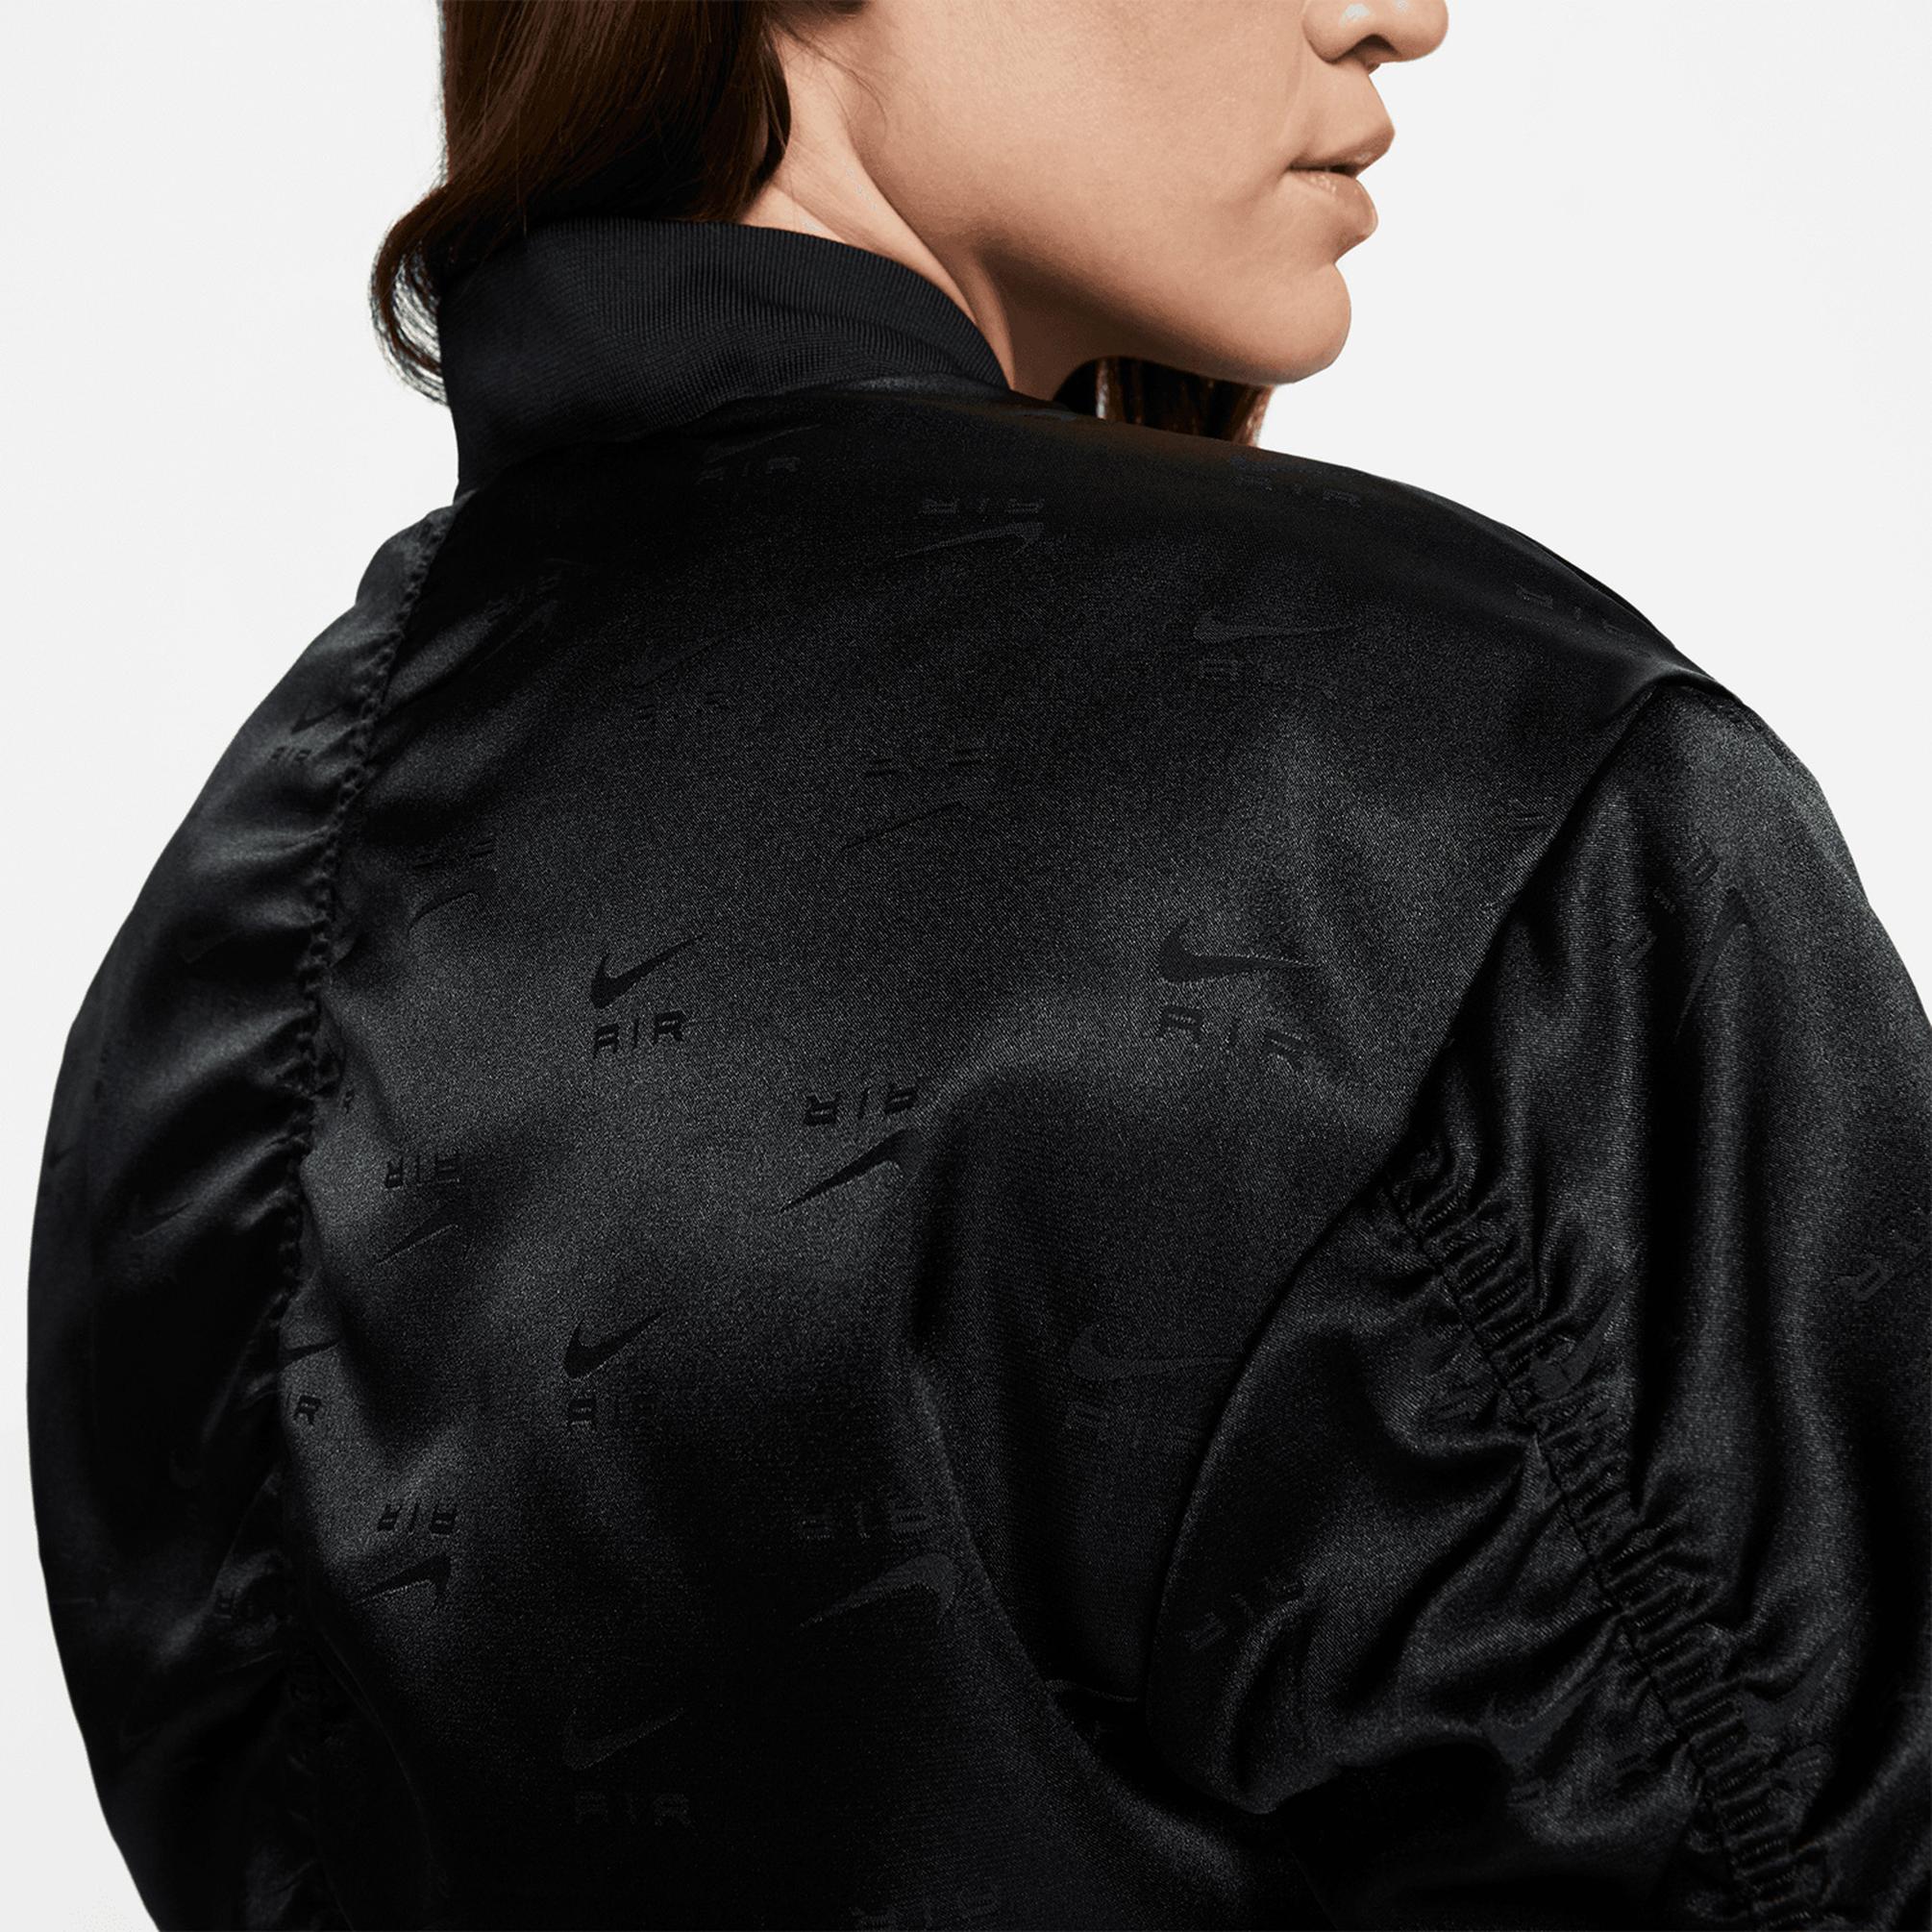  Nike Air Kadın Siyah/Gri/Gümüş Ceket